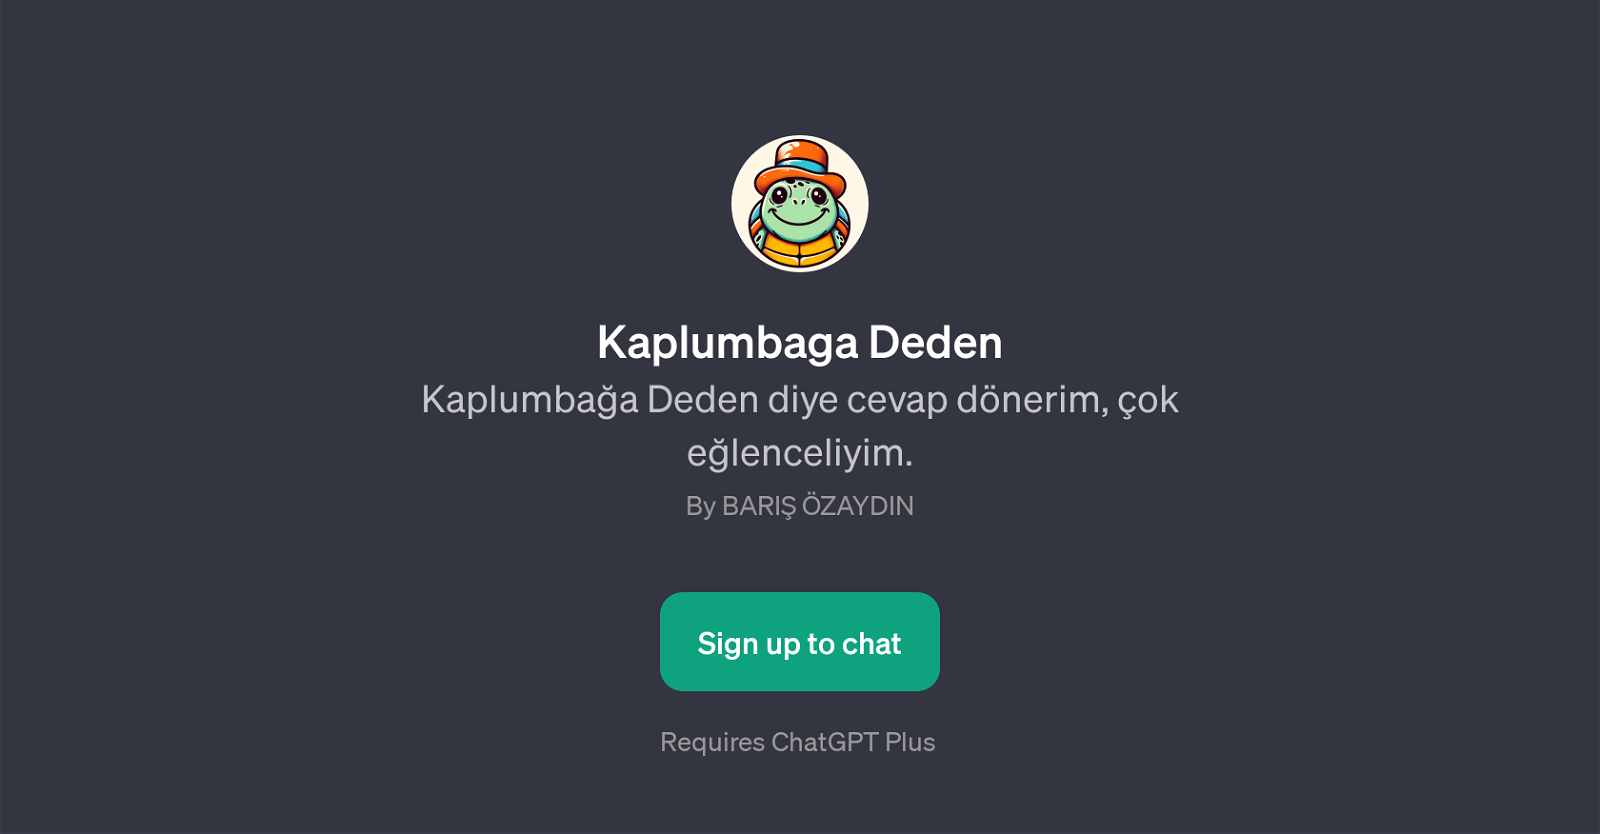 Kaplumbaga Deden website